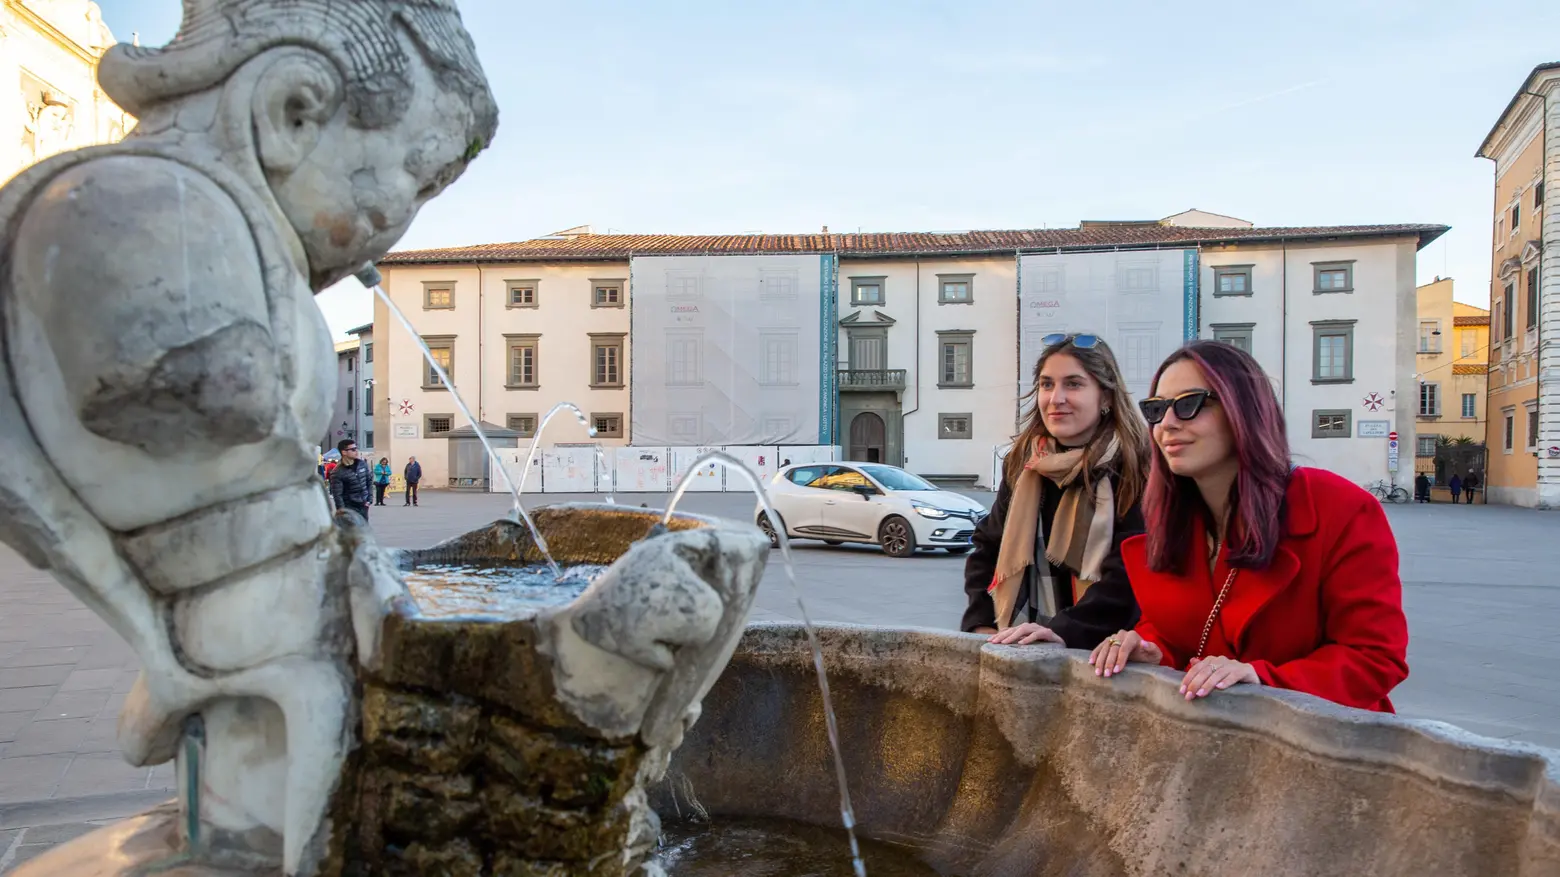 Una città piena di sorprese  Riscoprire le antiche fontane  Itinerario di marmo ed acqua